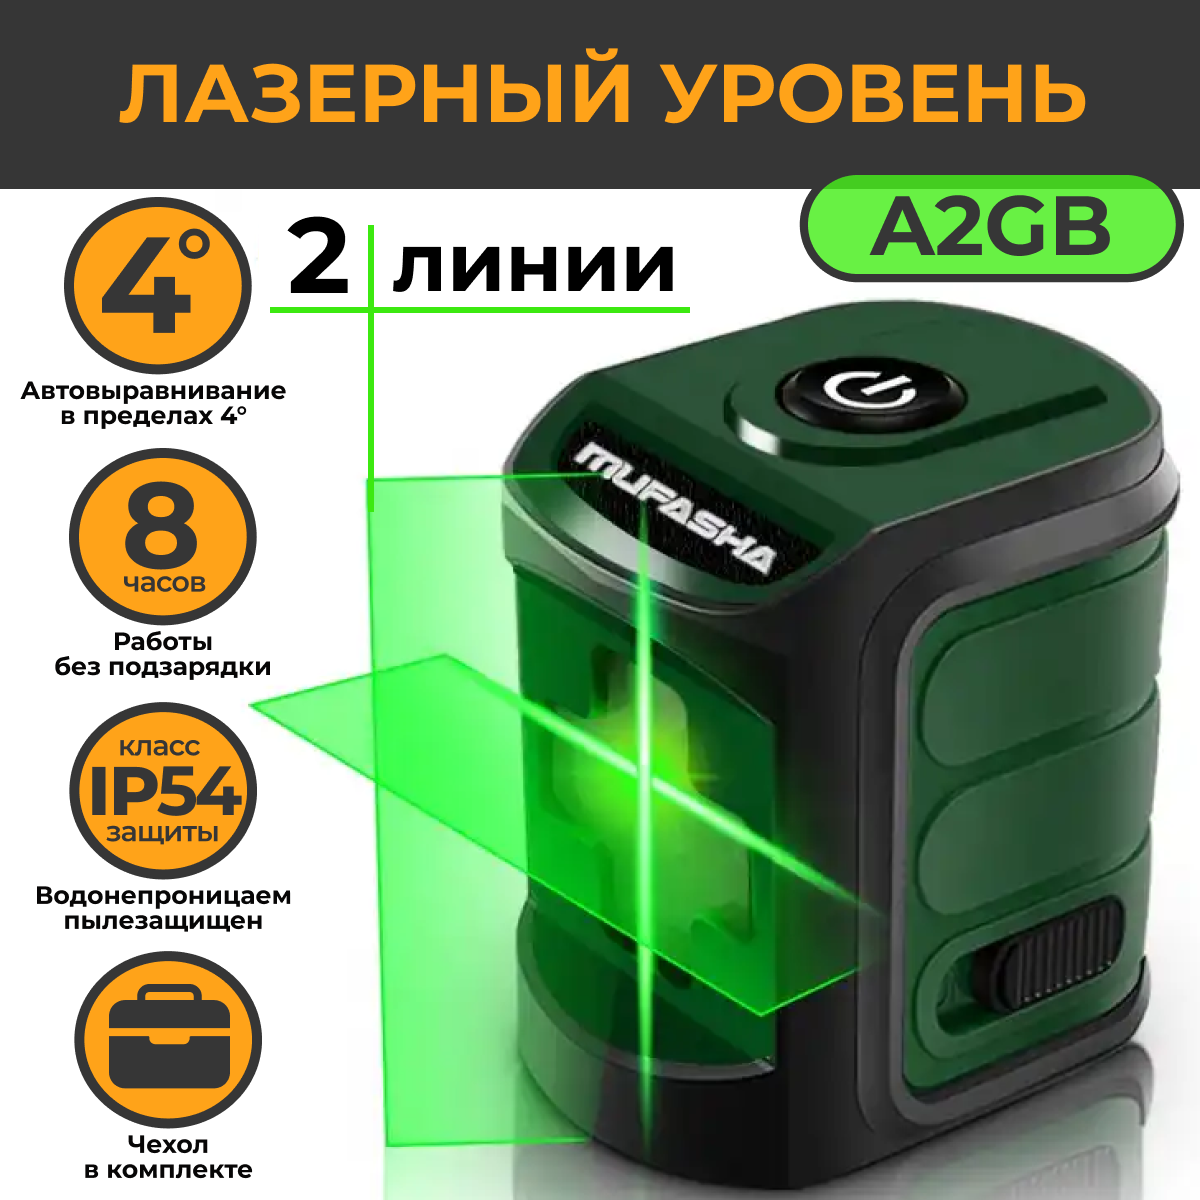 Лазерный уровень MUFASHA нивелир, 2 лазерных луча (A2GB зеленый), мини